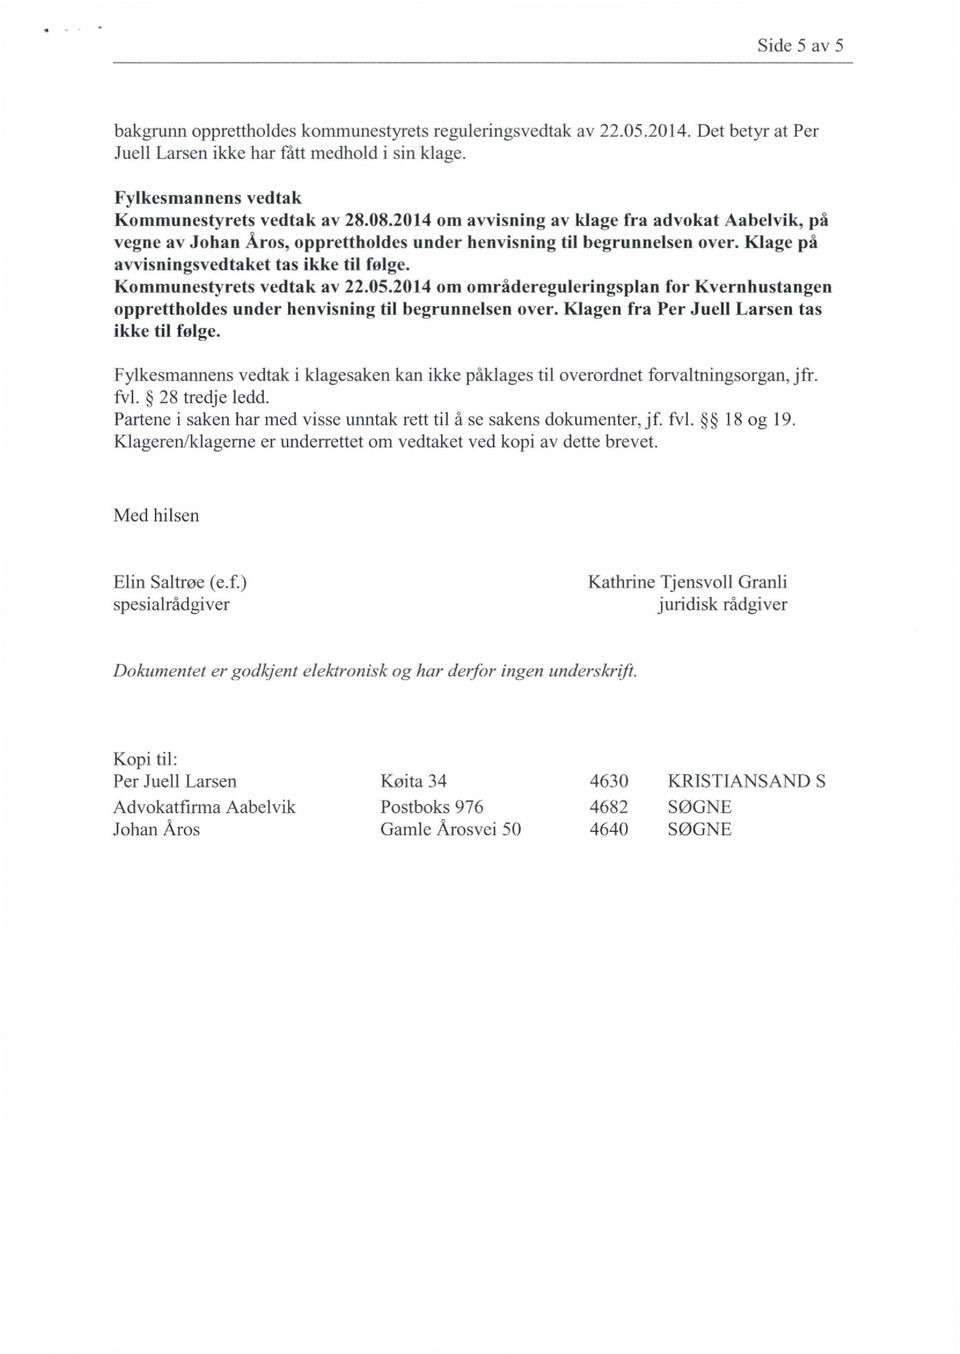 Kommunestyrets vedtak av 22.05.2014 om områdereguleringsplan for Kvernhustangen opprettholdes under henvisning til begrunnelsen over. Klagen fra Per Juell Larsen tas ikke til følge.